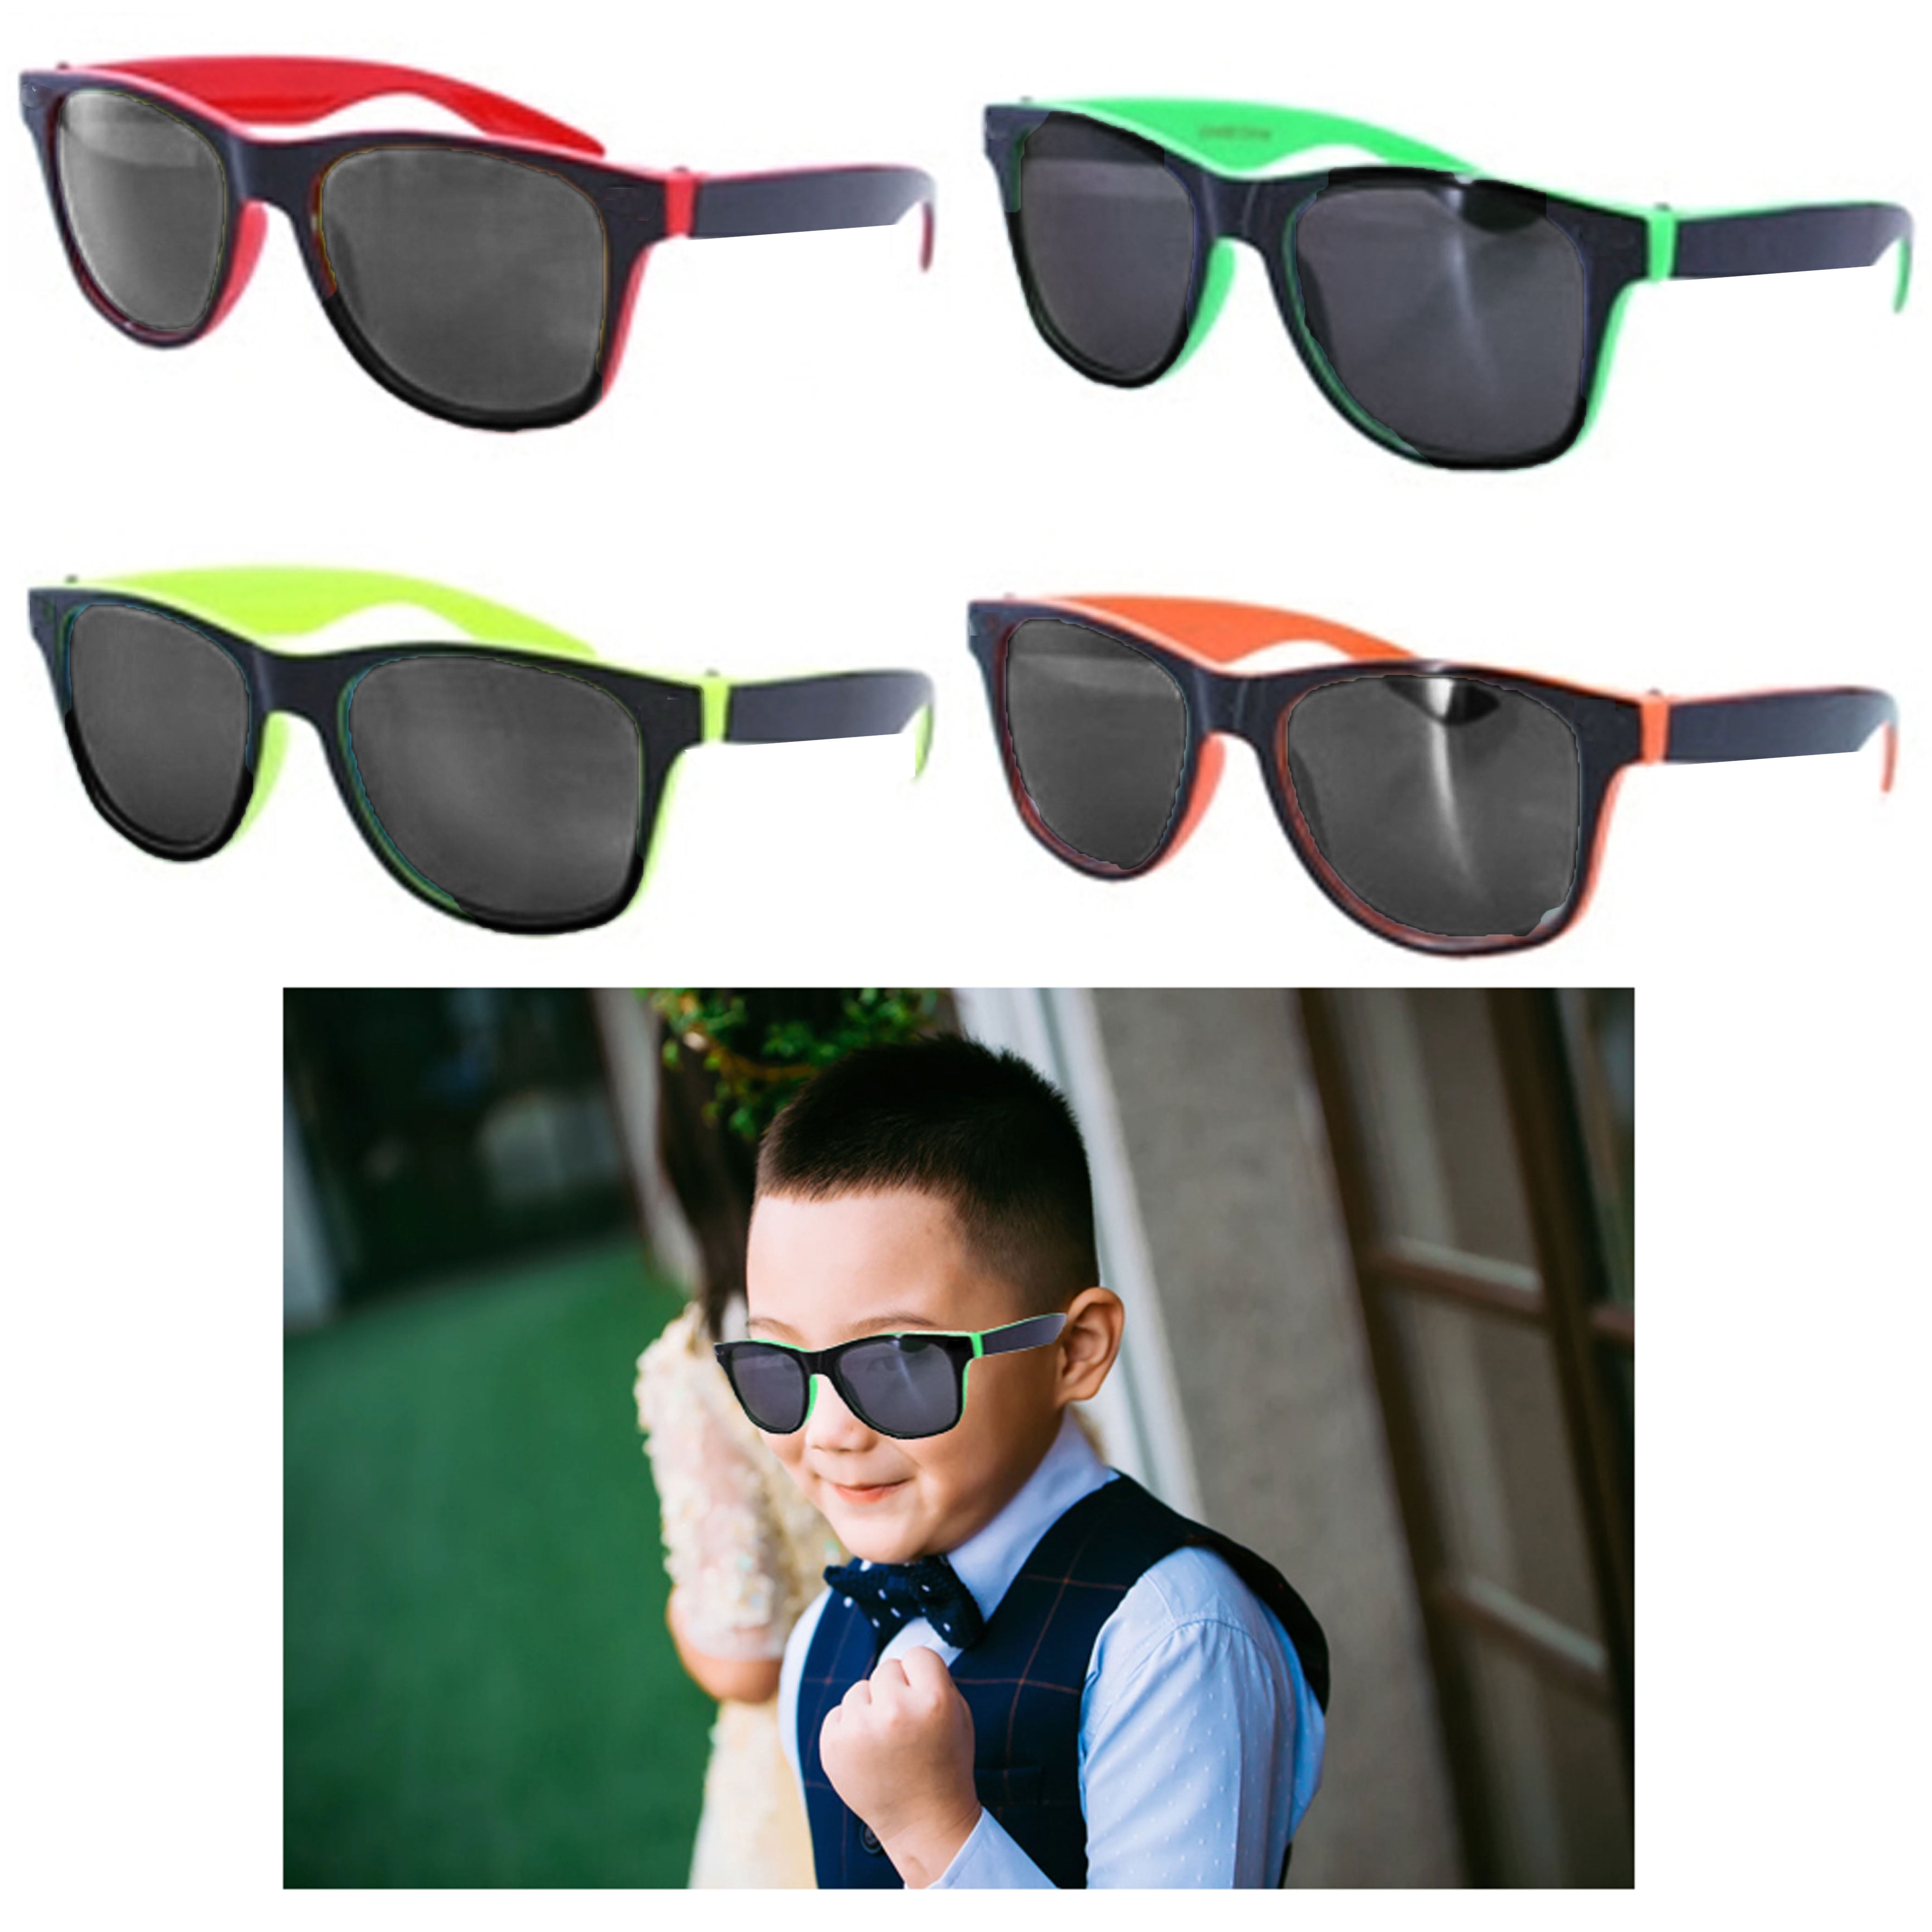 Sunglasses Reflective Mirror Kids Children Sun Glasses Boys Girls Goggles UV400